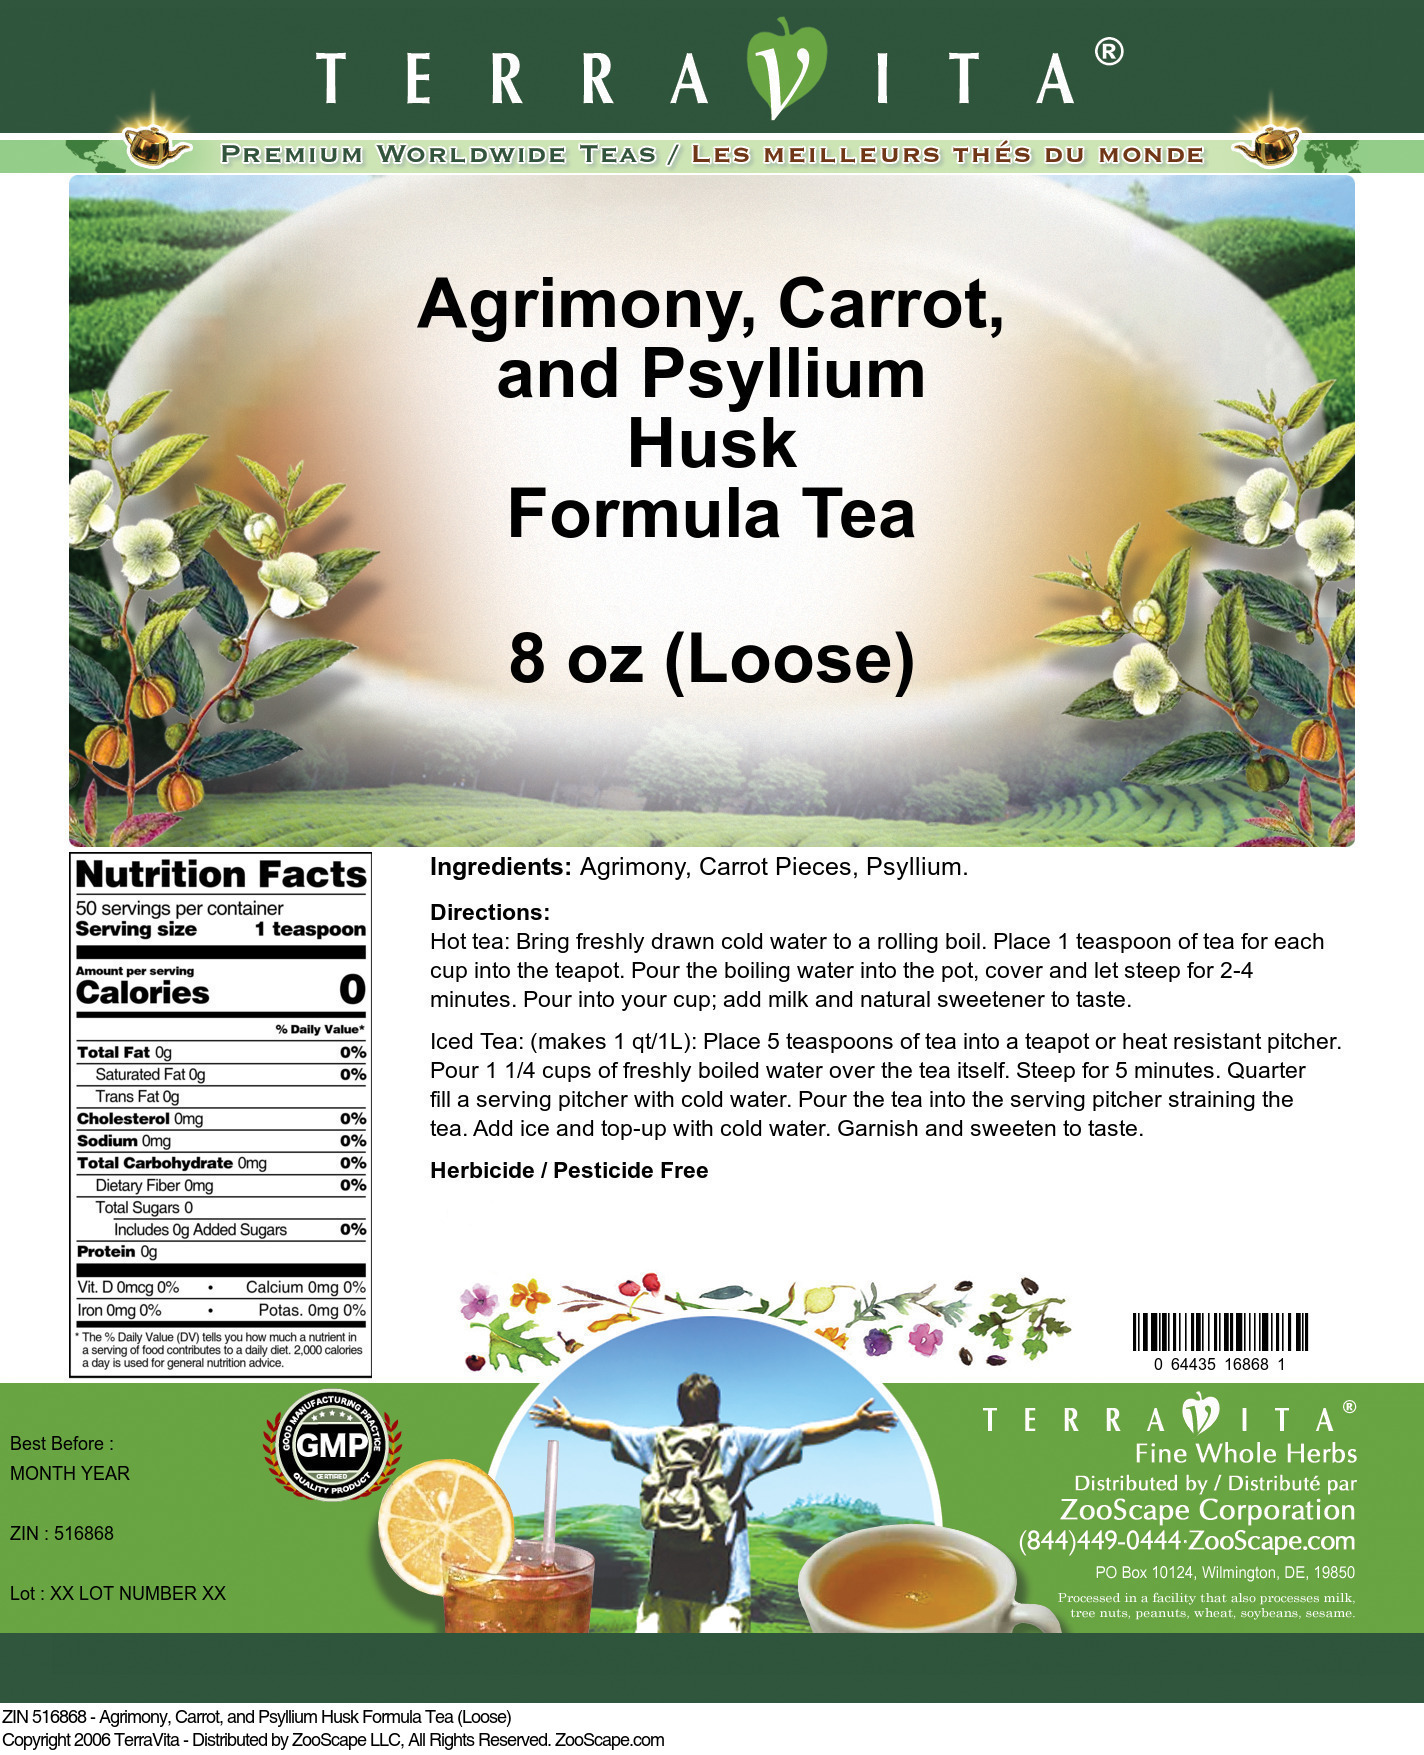 Agrimony, Carrot, and Psyllium Husk Formula Tea (Loose) - Label